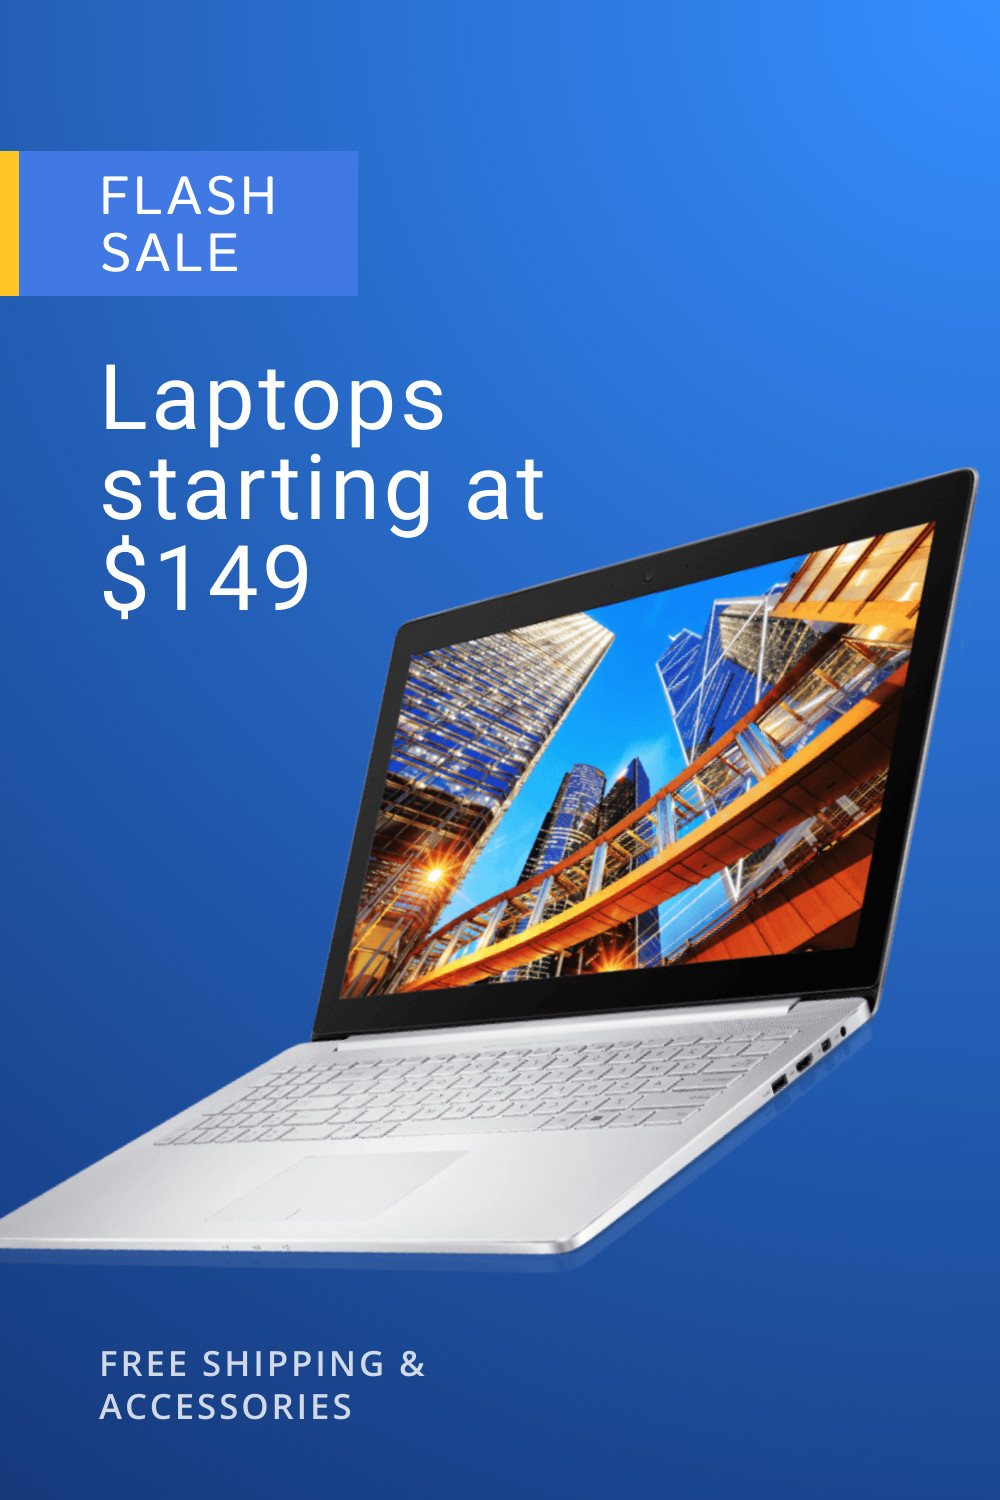 Blue Laptop Flash Sales 